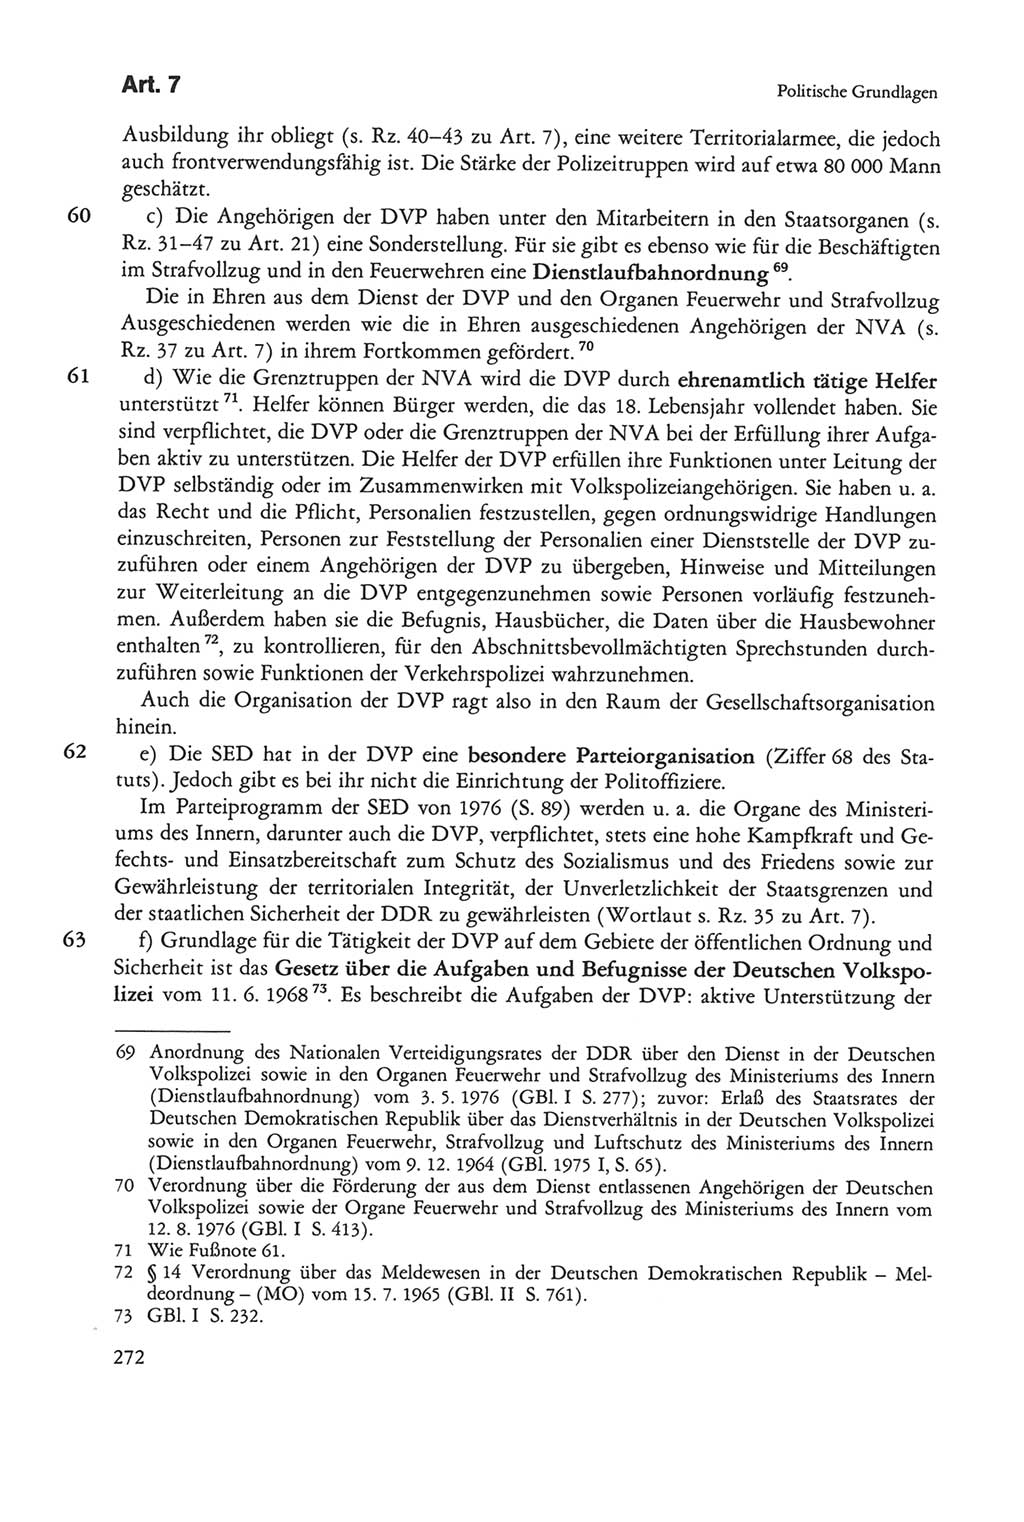 Die sozialistische Verfassung der Deutschen Demokratischen Republik (DDR), Kommentar 1982, Seite 272 (Soz. Verf. DDR Komm. 1982, S. 272)